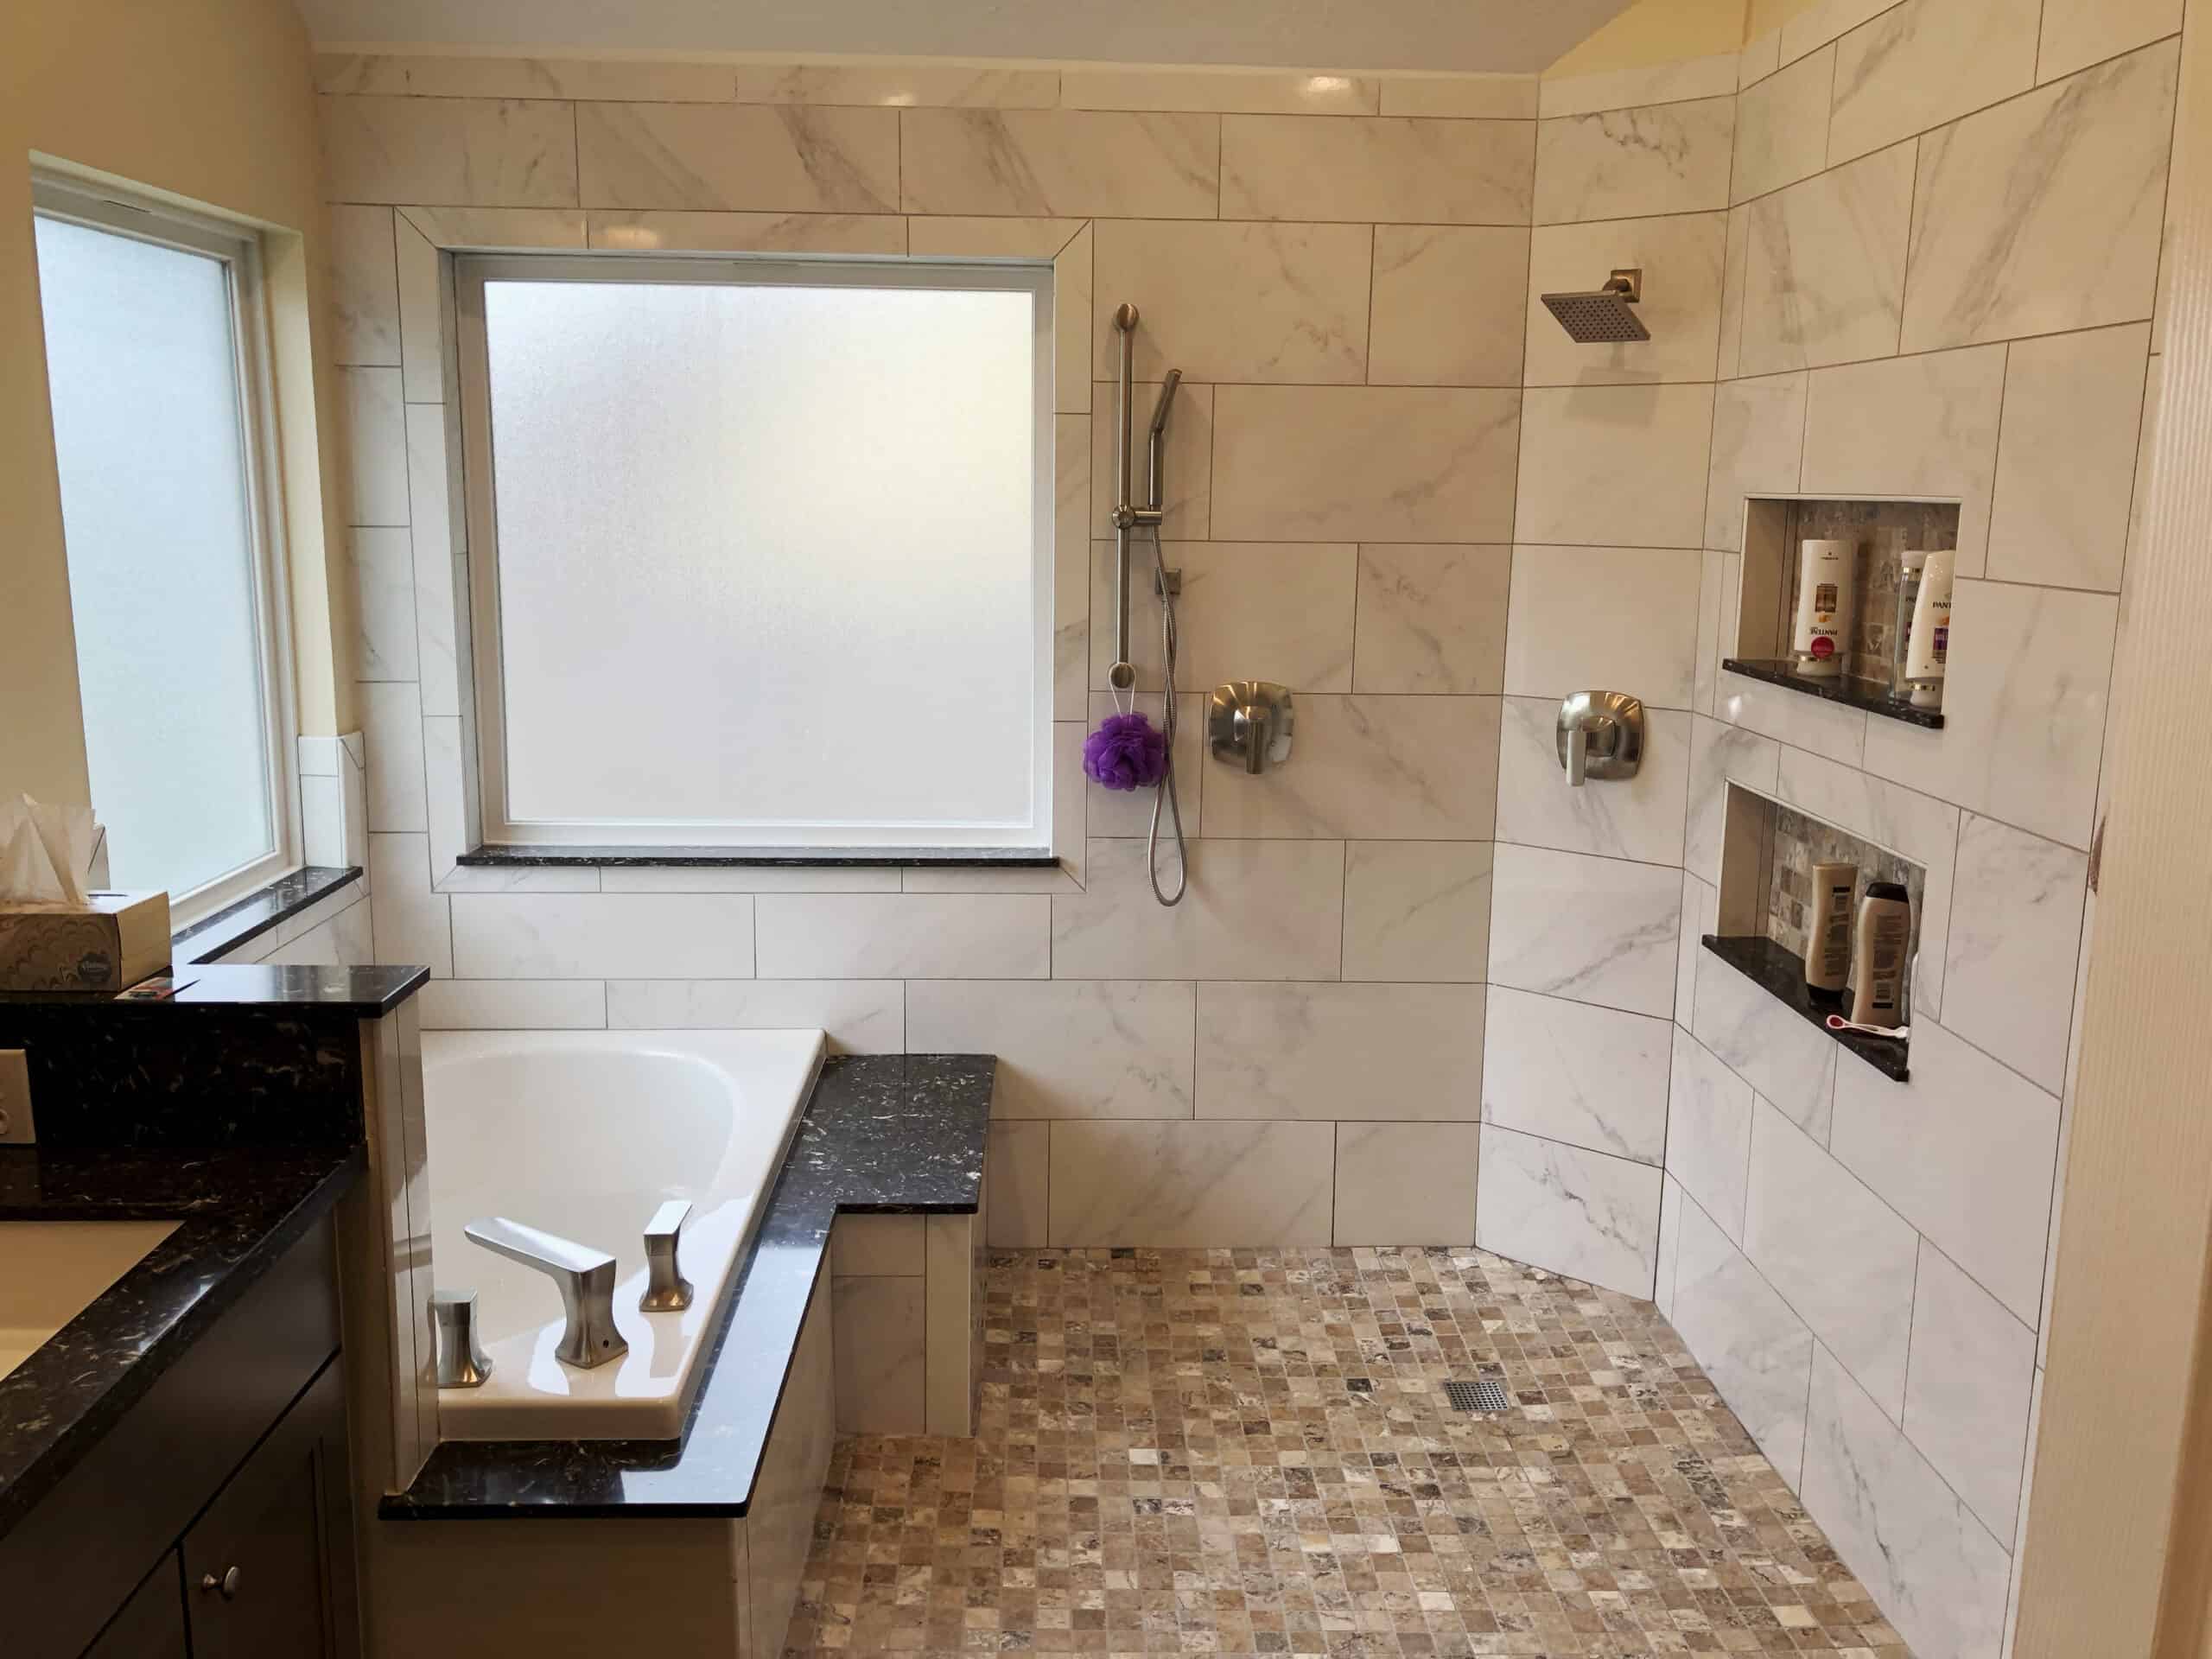 Seabrook Bathroom Remodel